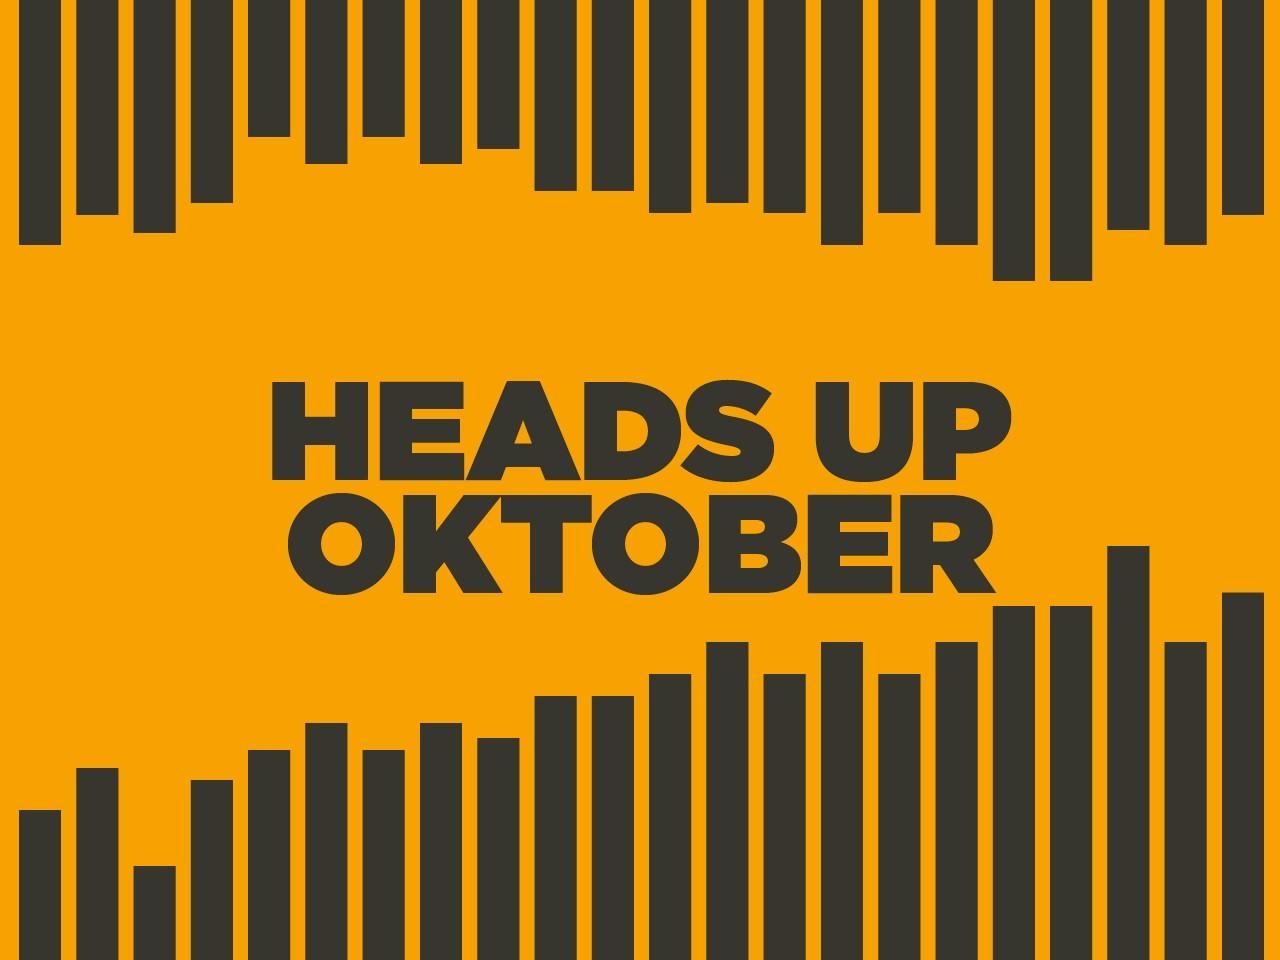 Heads up oktober